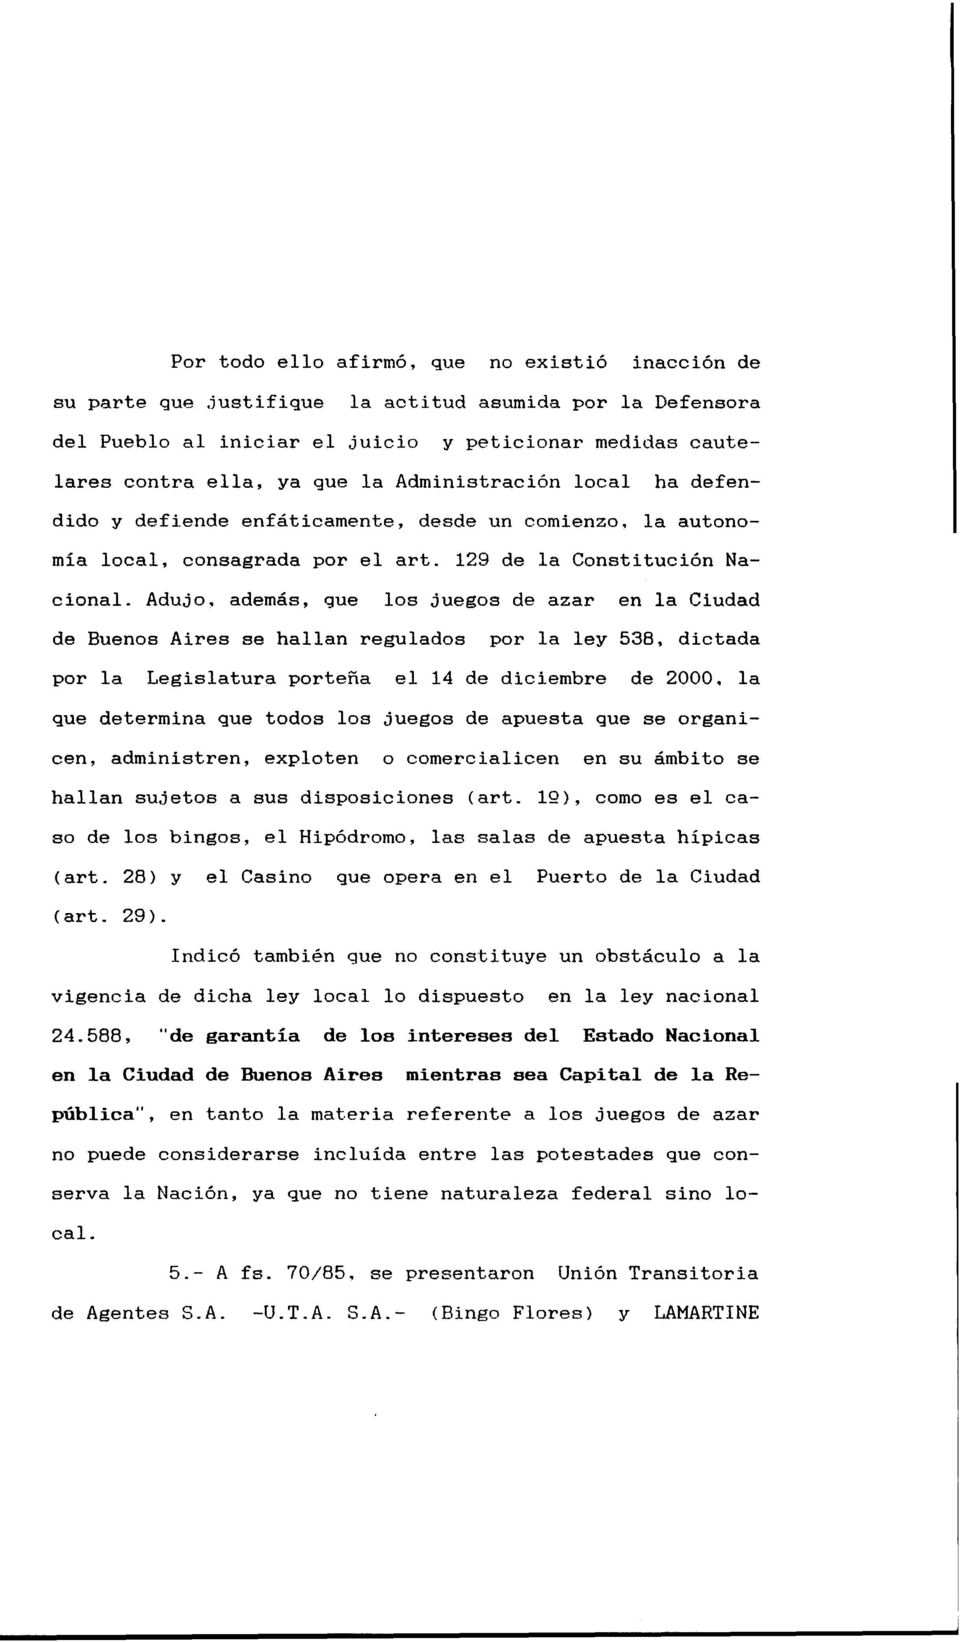 un comienzo, la autonomía local, consagrada por el arto 129 de la Constitución Nacional. Adujo, además, que los juegos de azar en la Ciudad de Buenos Aires se hallan regulados por la ley 538.